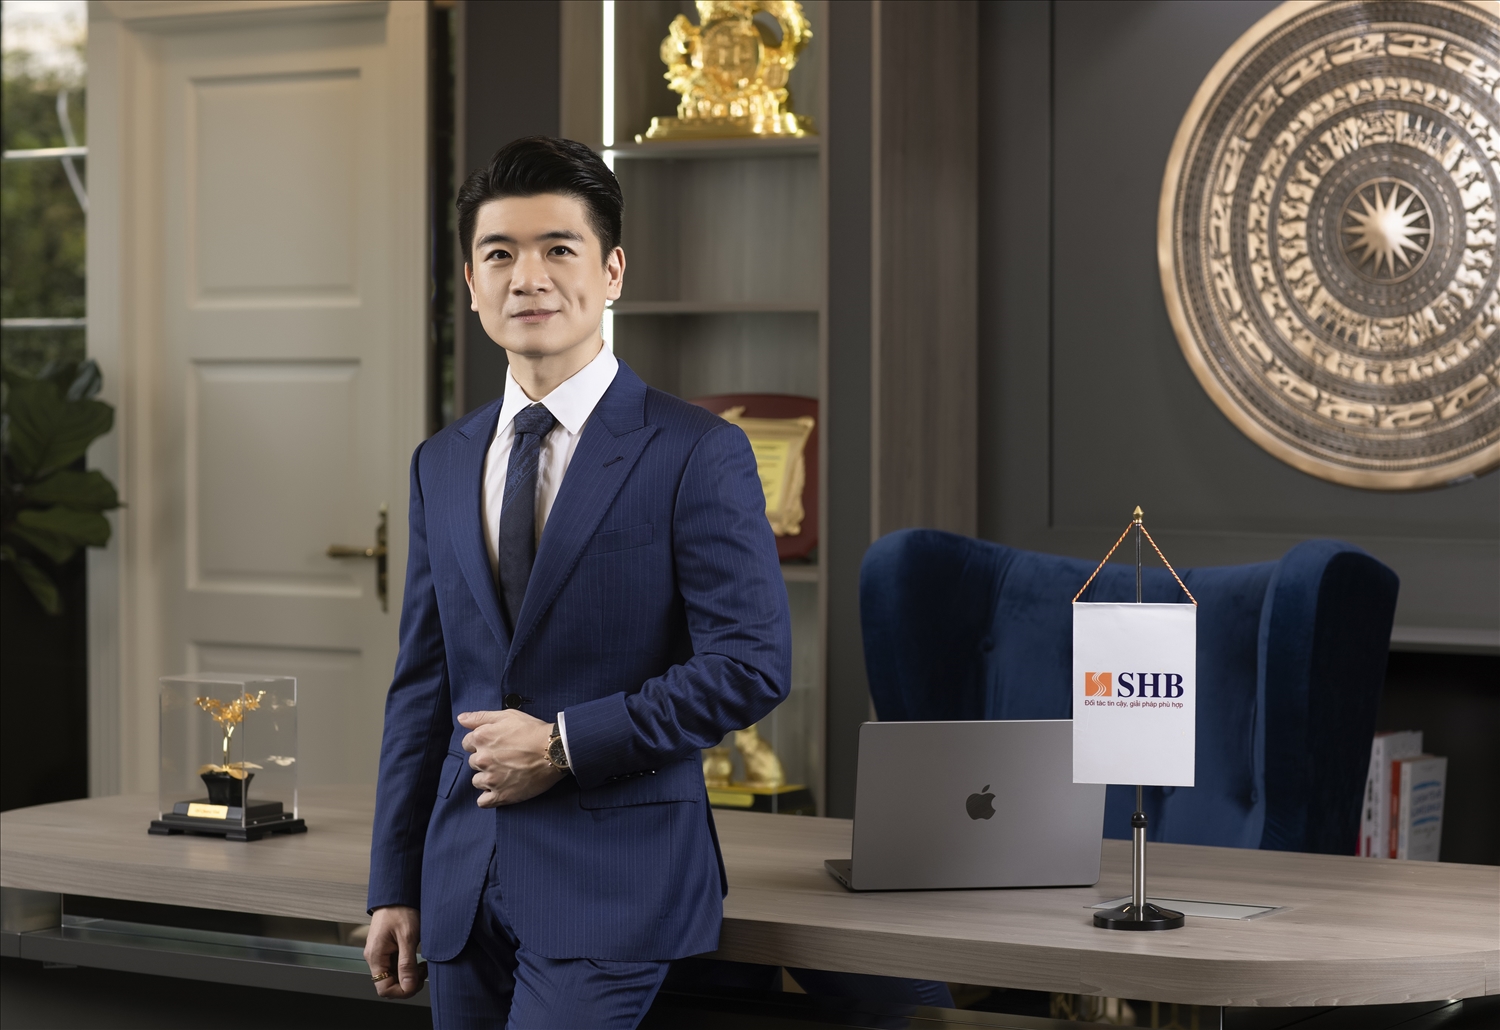 Phó Chủ tịch SHB Đỗ Quang Vinh đăng ký mua hơn 100 triệu cổ phiếu